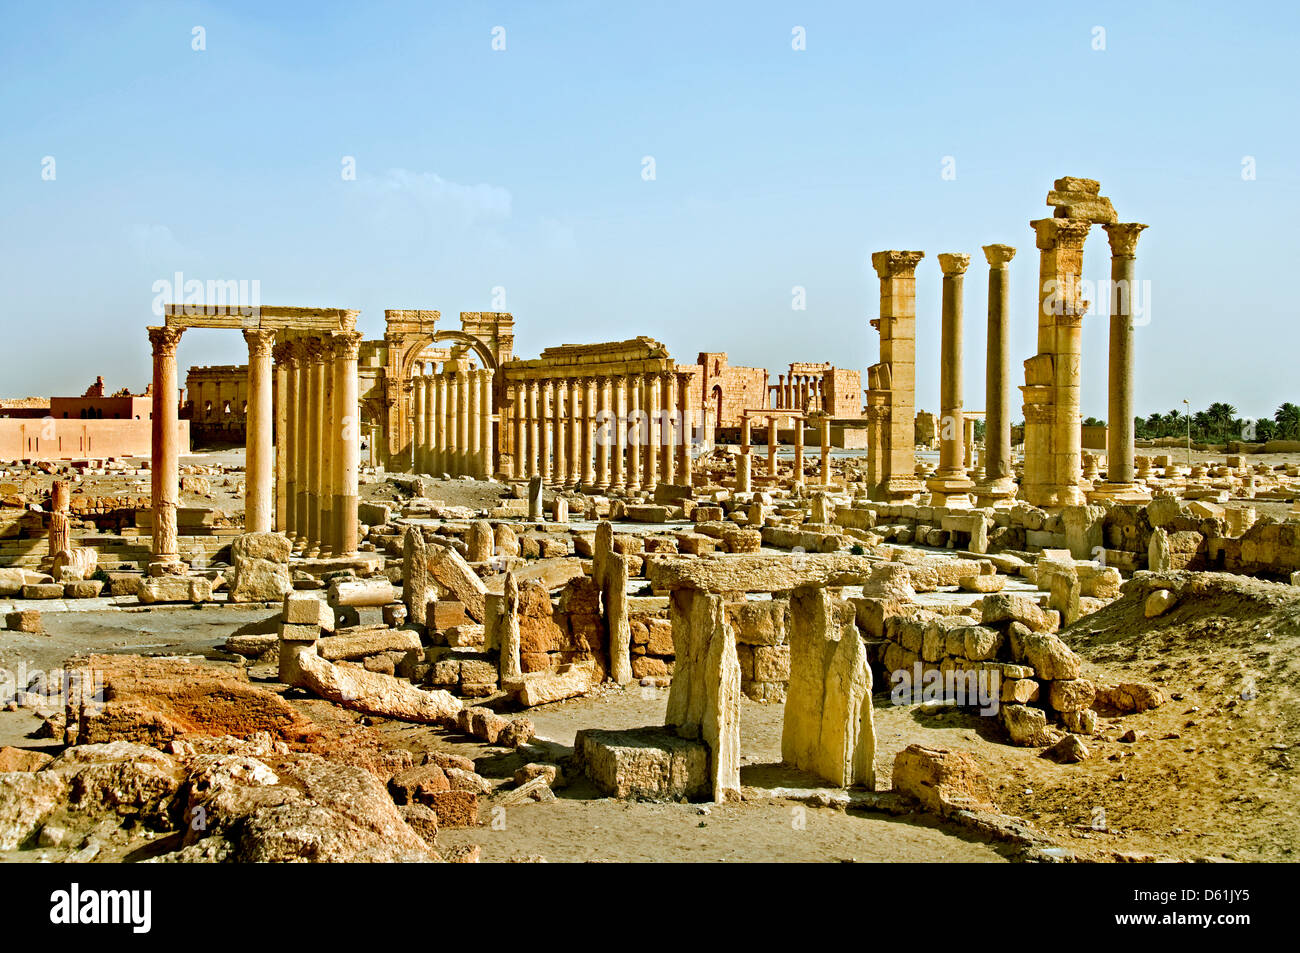 Arc de Triomphe 2 100 Palmyre Syrie romaine" ( syrien ont détruit l'emblématique Arc de Triomphe à Palmyre ) Banque D'Images